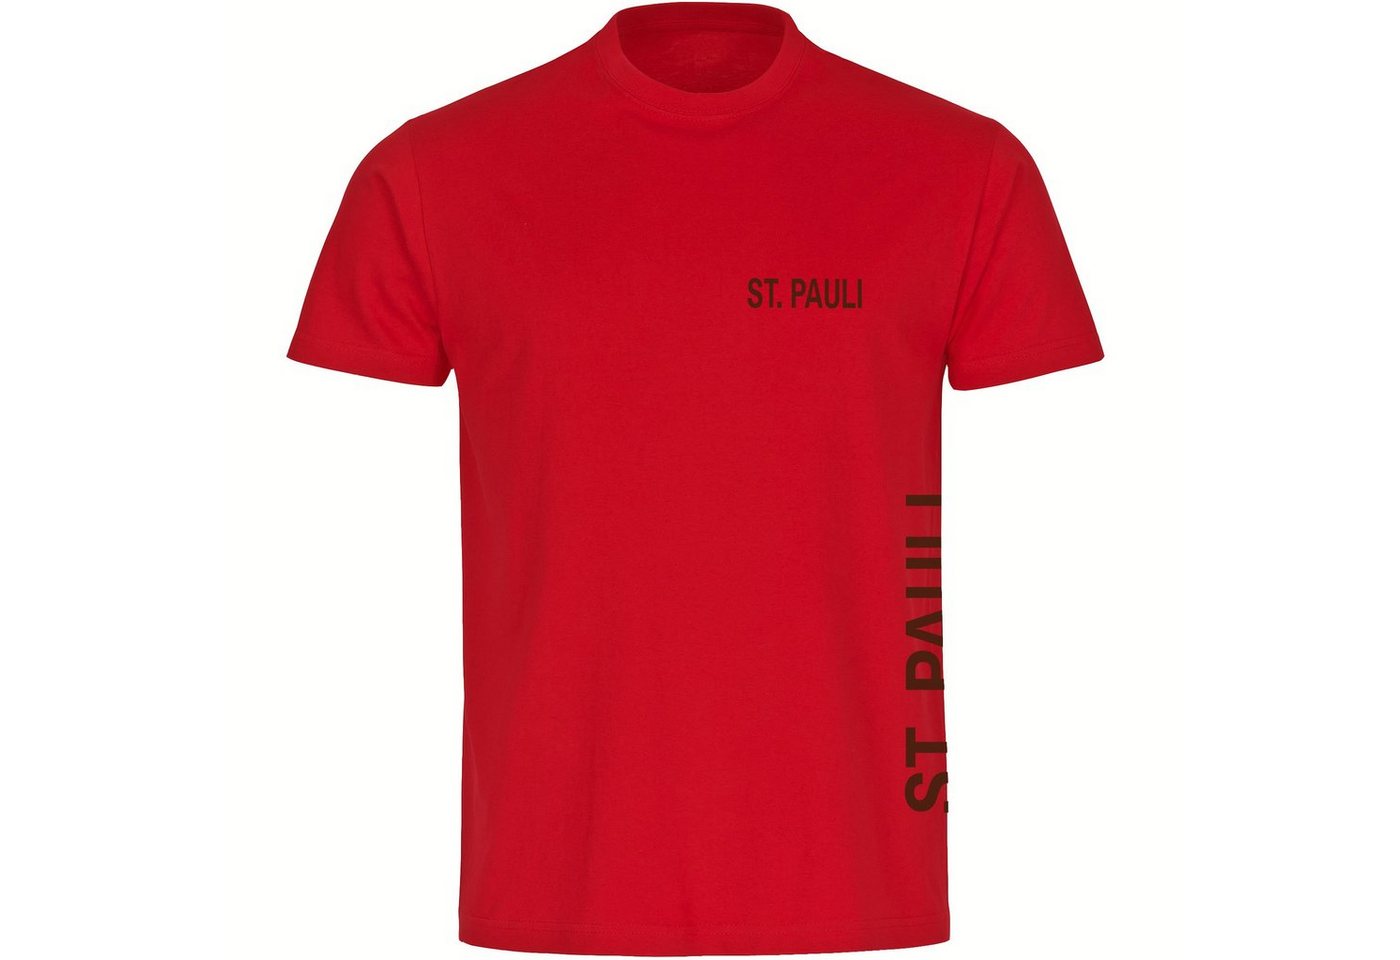 multifanshop T-Shirt Herren St. Pauli - Brust & Seite - Männer von multifanshop